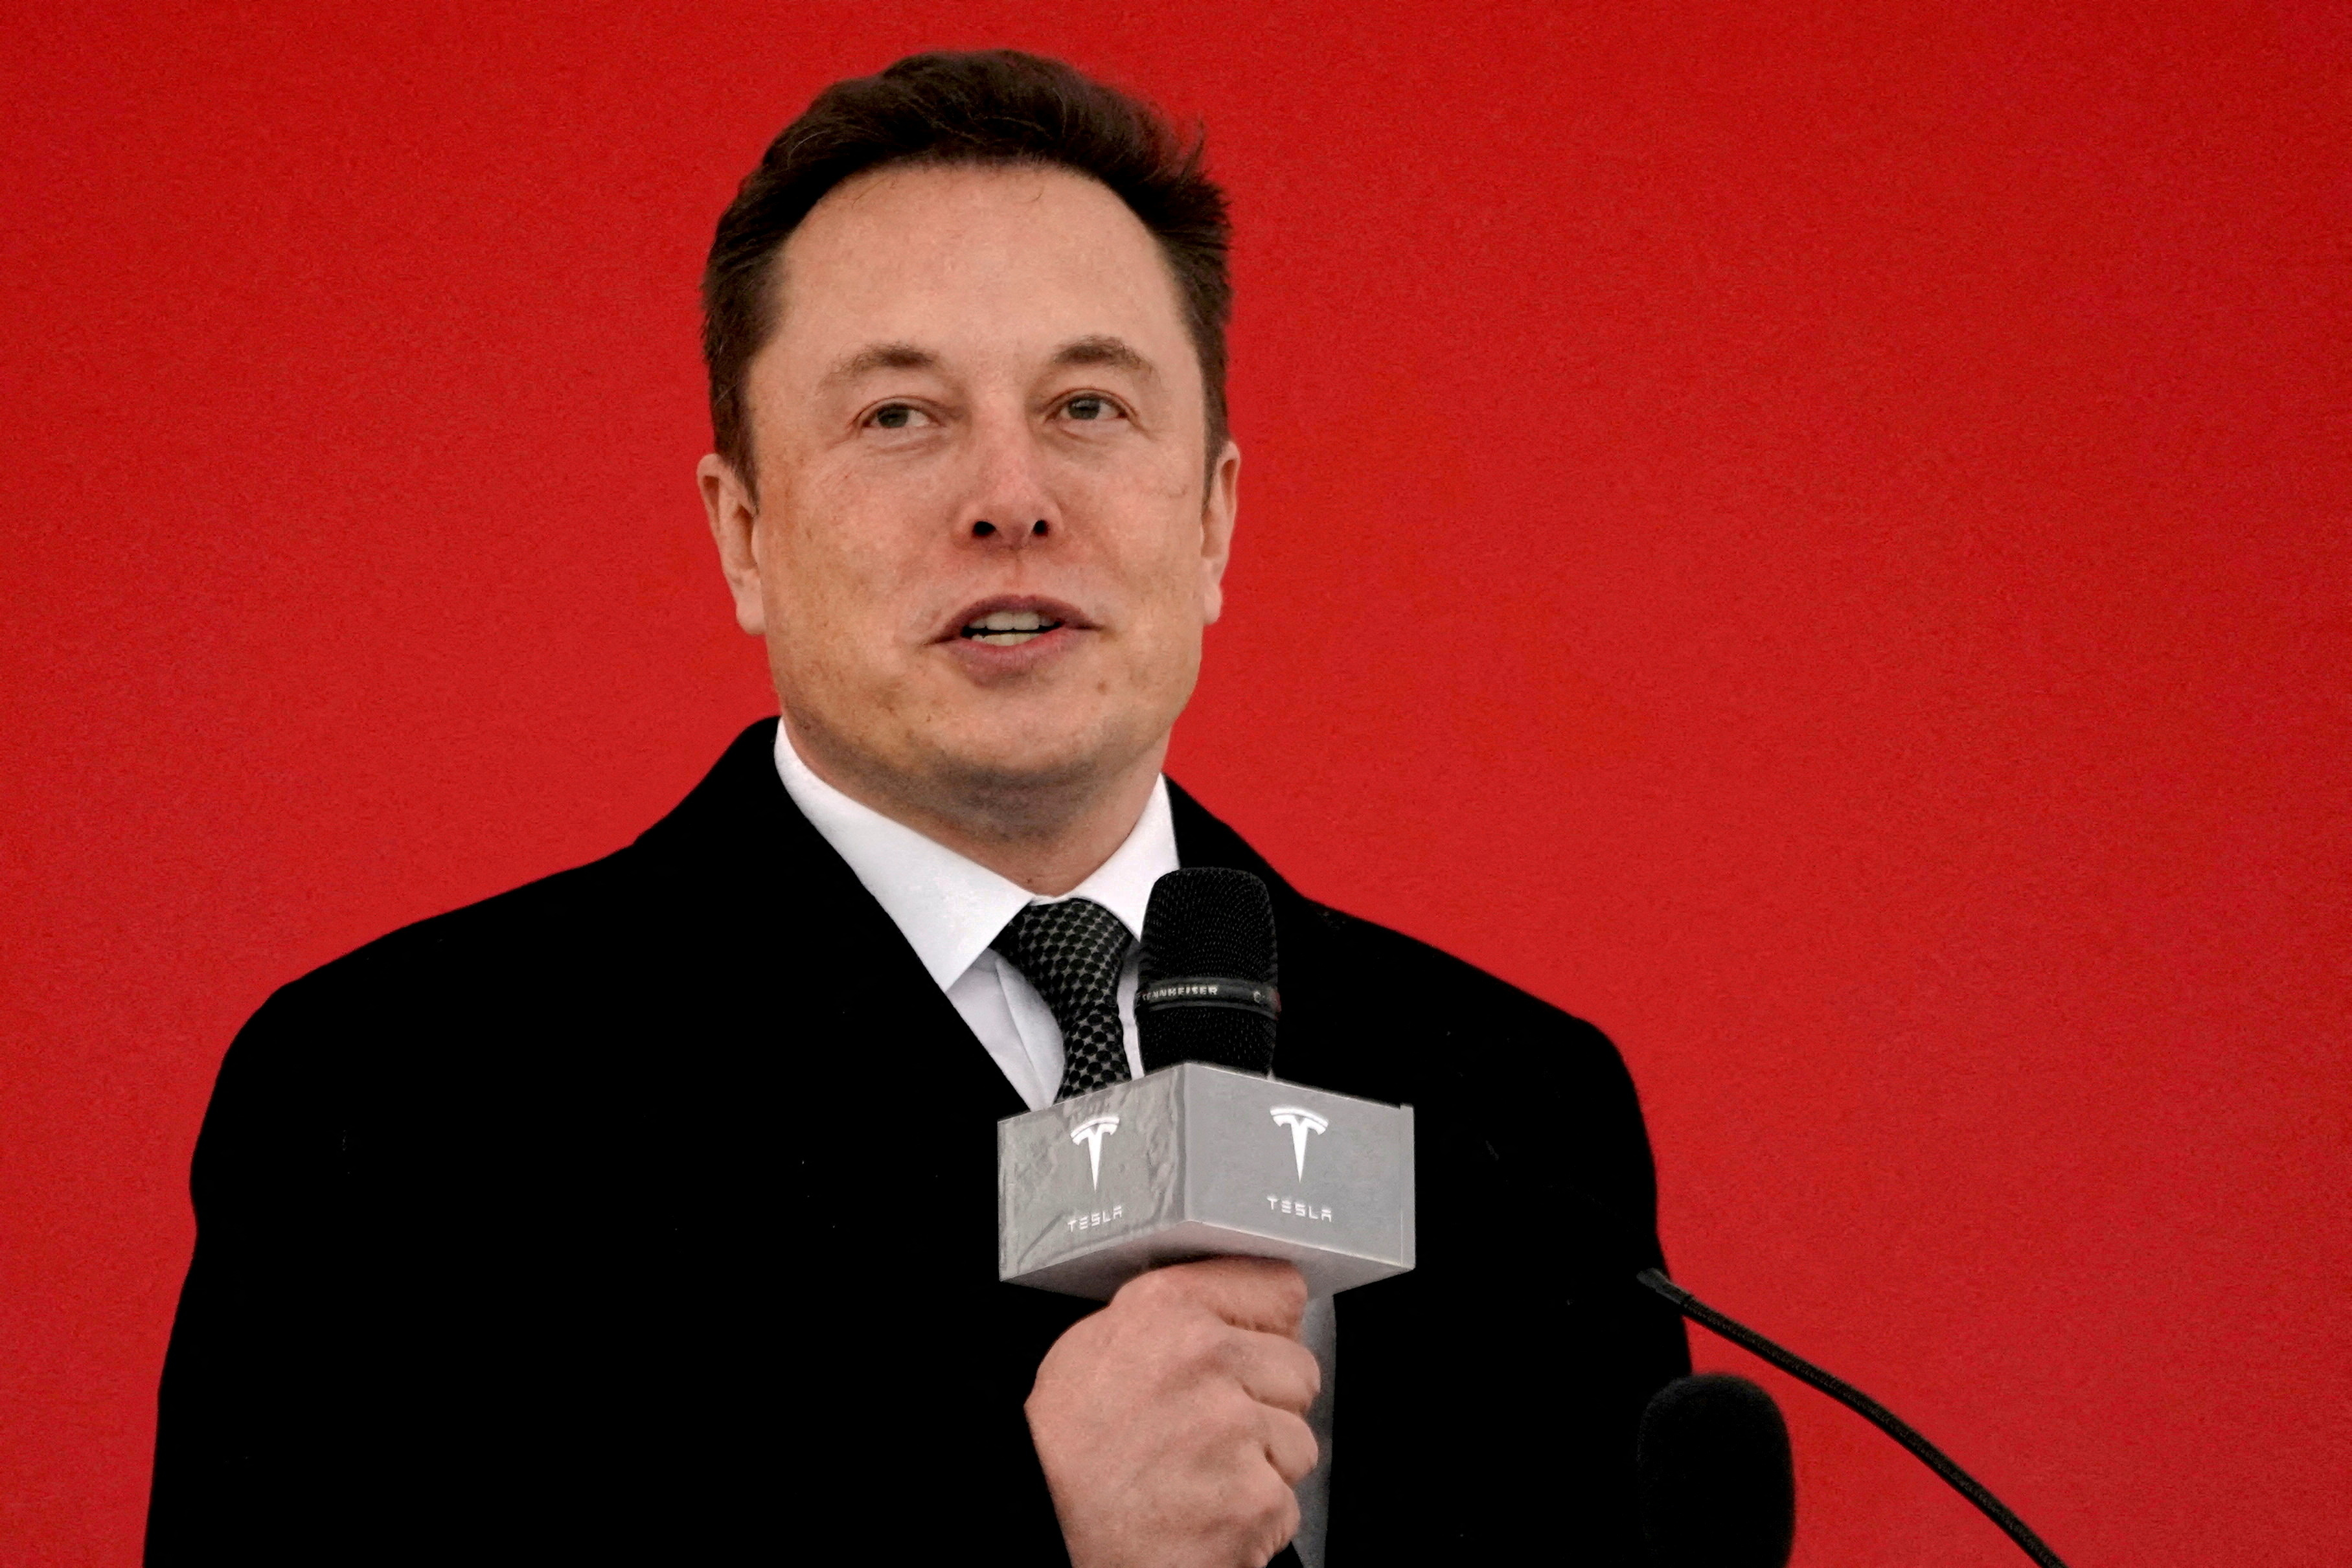 Dyrektor generalny Tesli, Elon Musk, wziął udział w ceremonii otwarcia Gigafactory Tesla Shanghai w Szanghaju